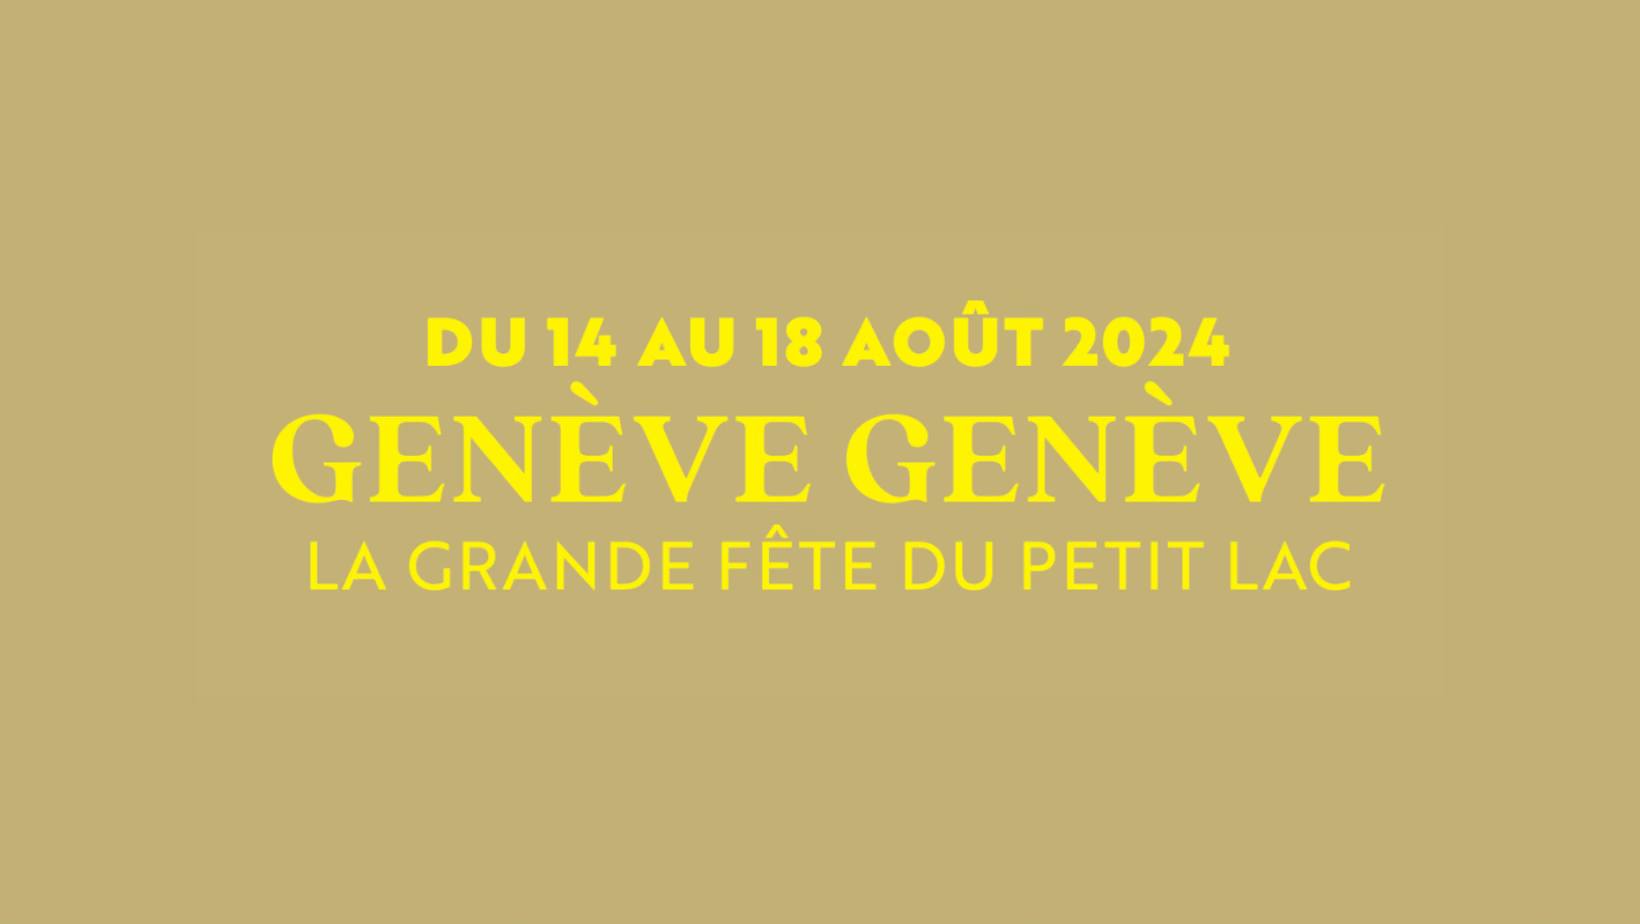 La grande fête du petit Lac "Genève Genève"